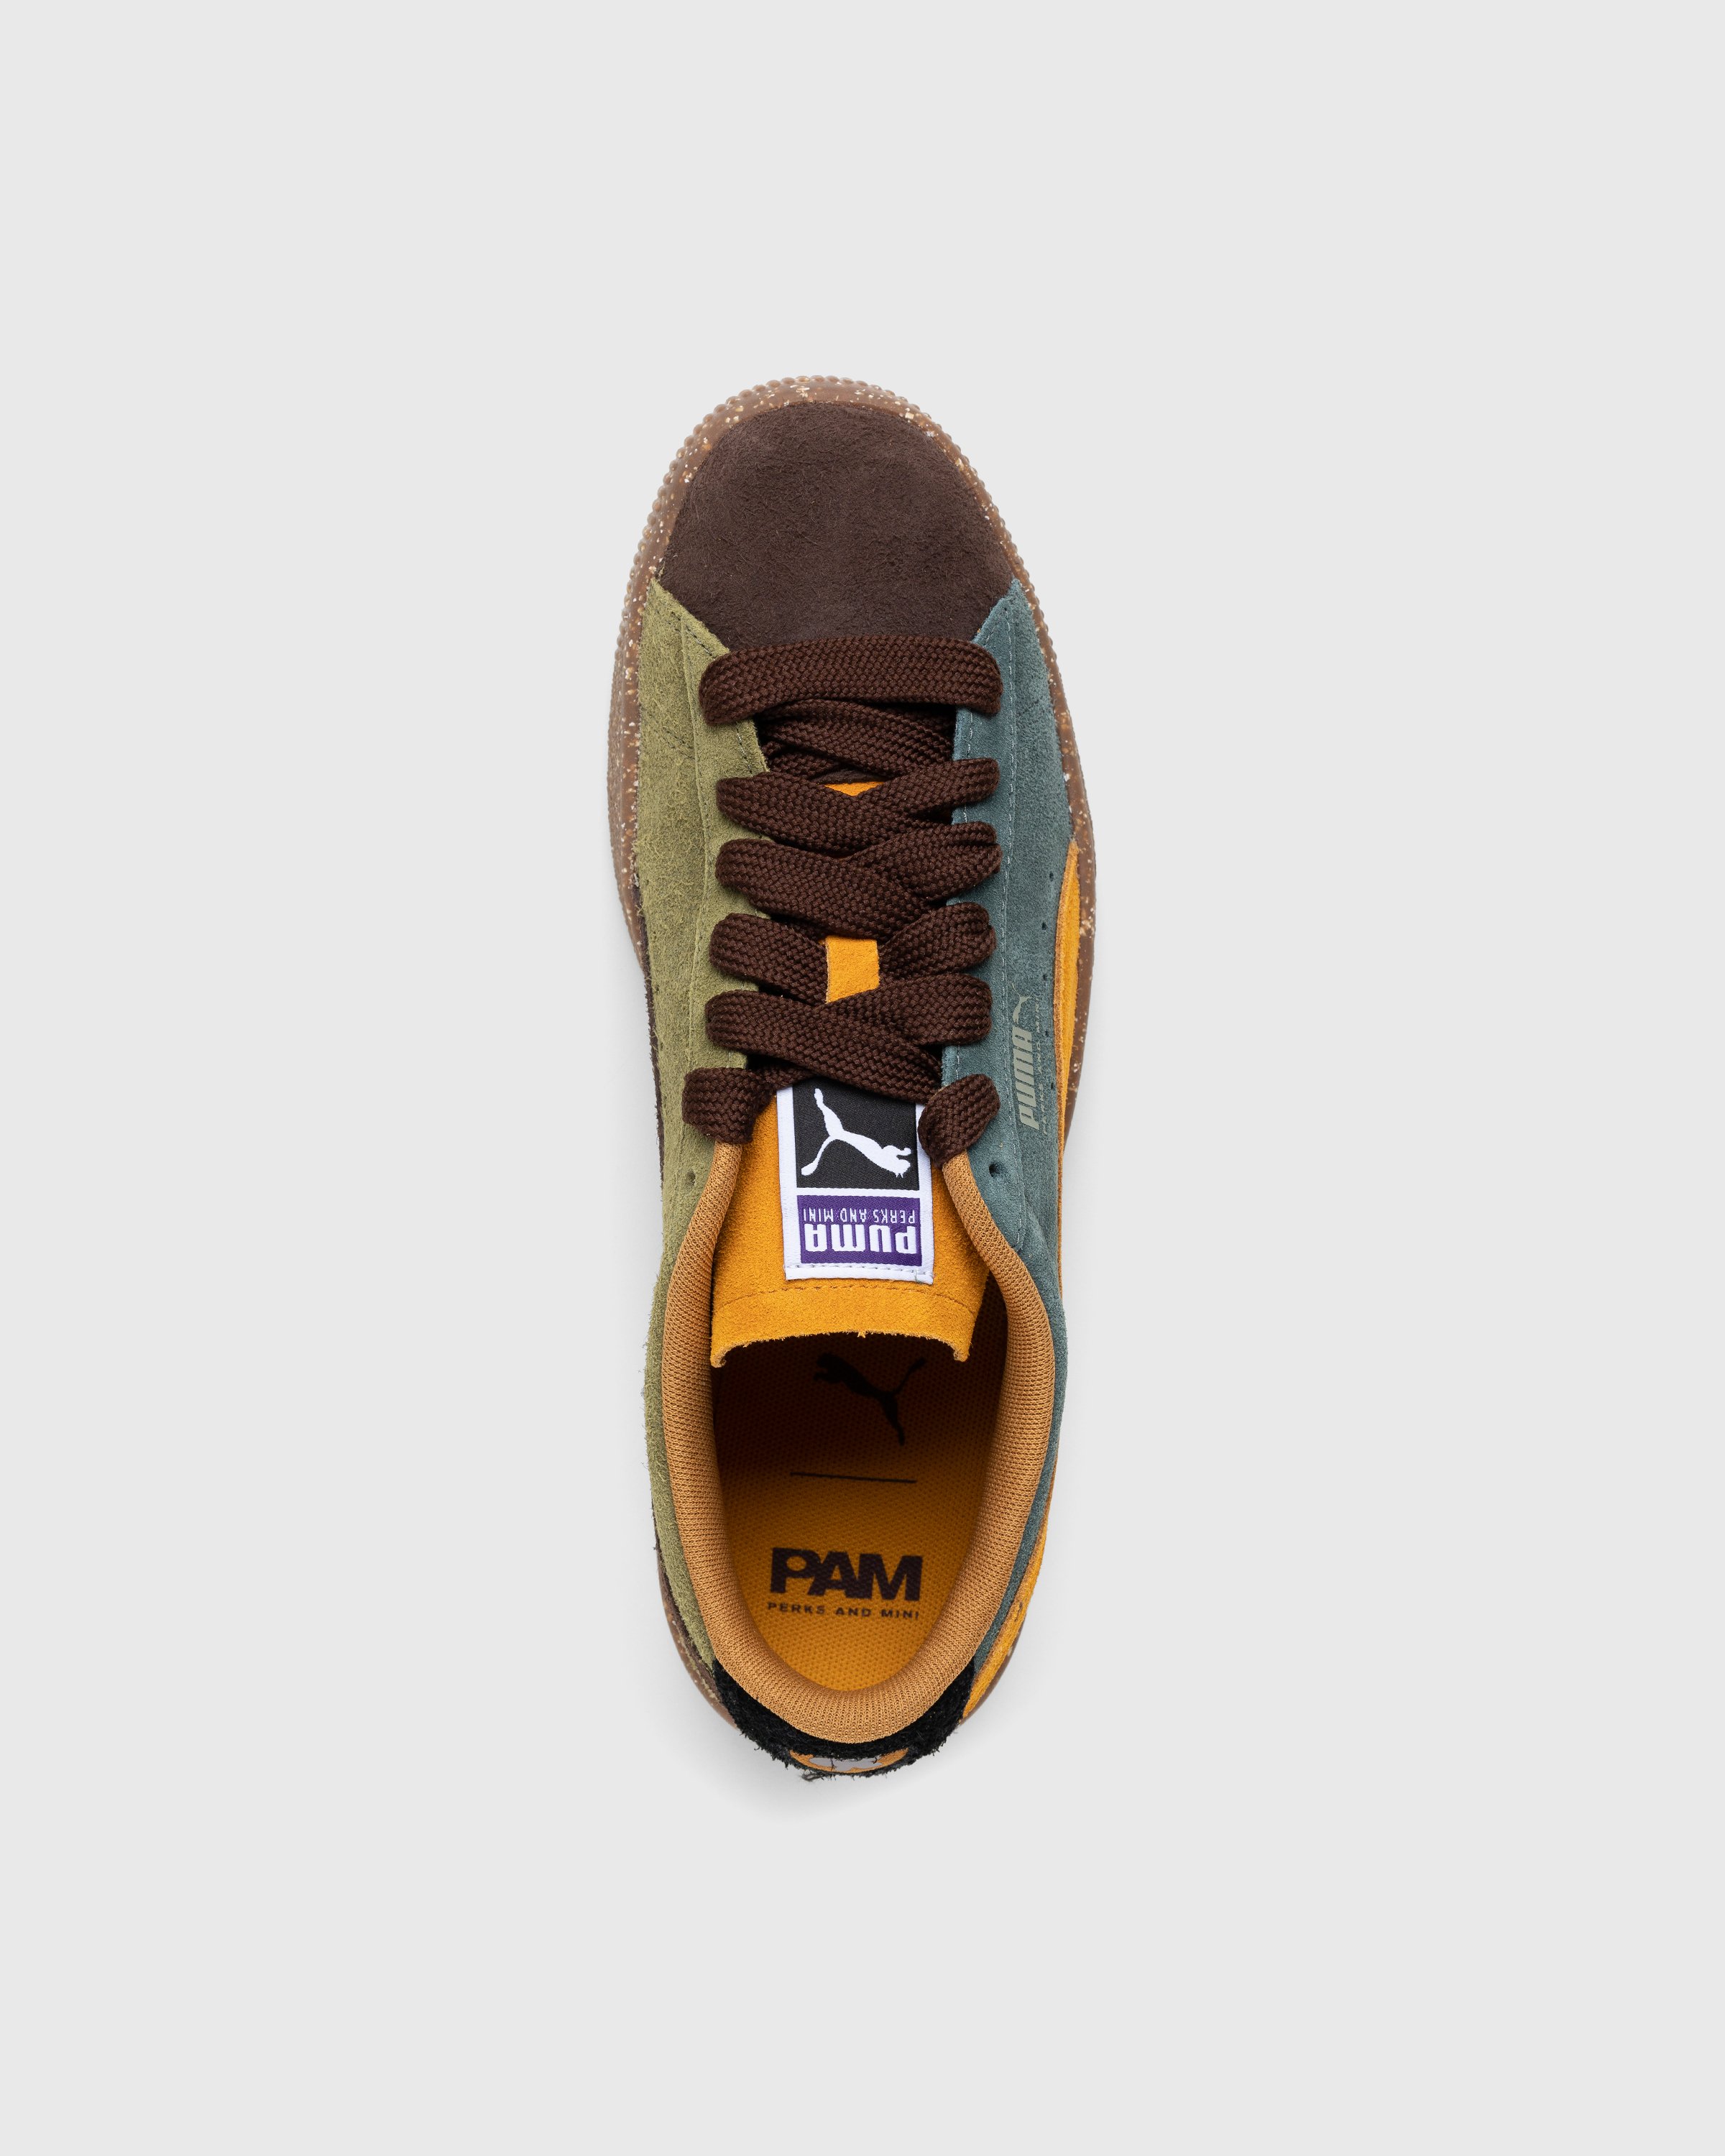 Puma x P.A.M. - Suede Vintage Brown - Footwear - Brown - Image 5